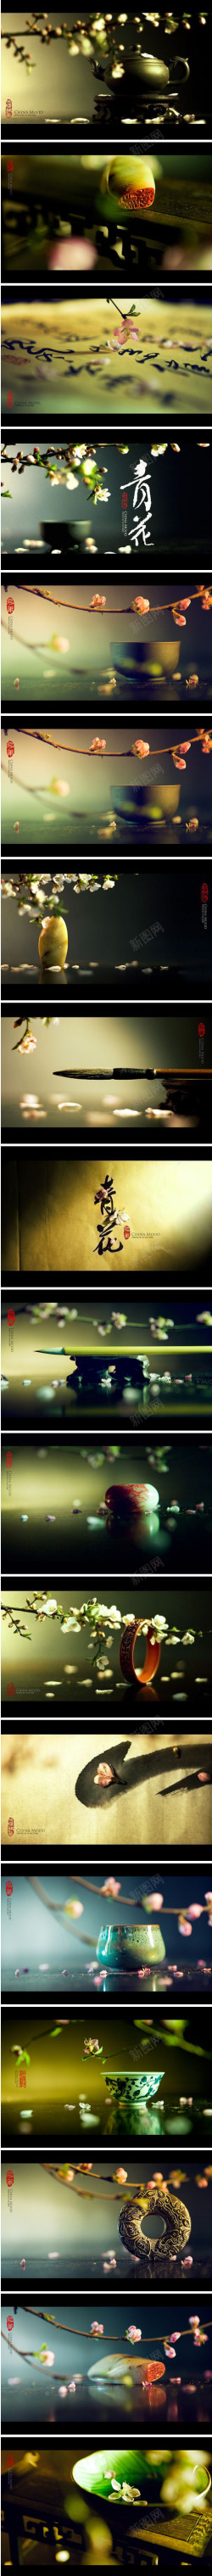 中国风茶壶风景壁纸素材